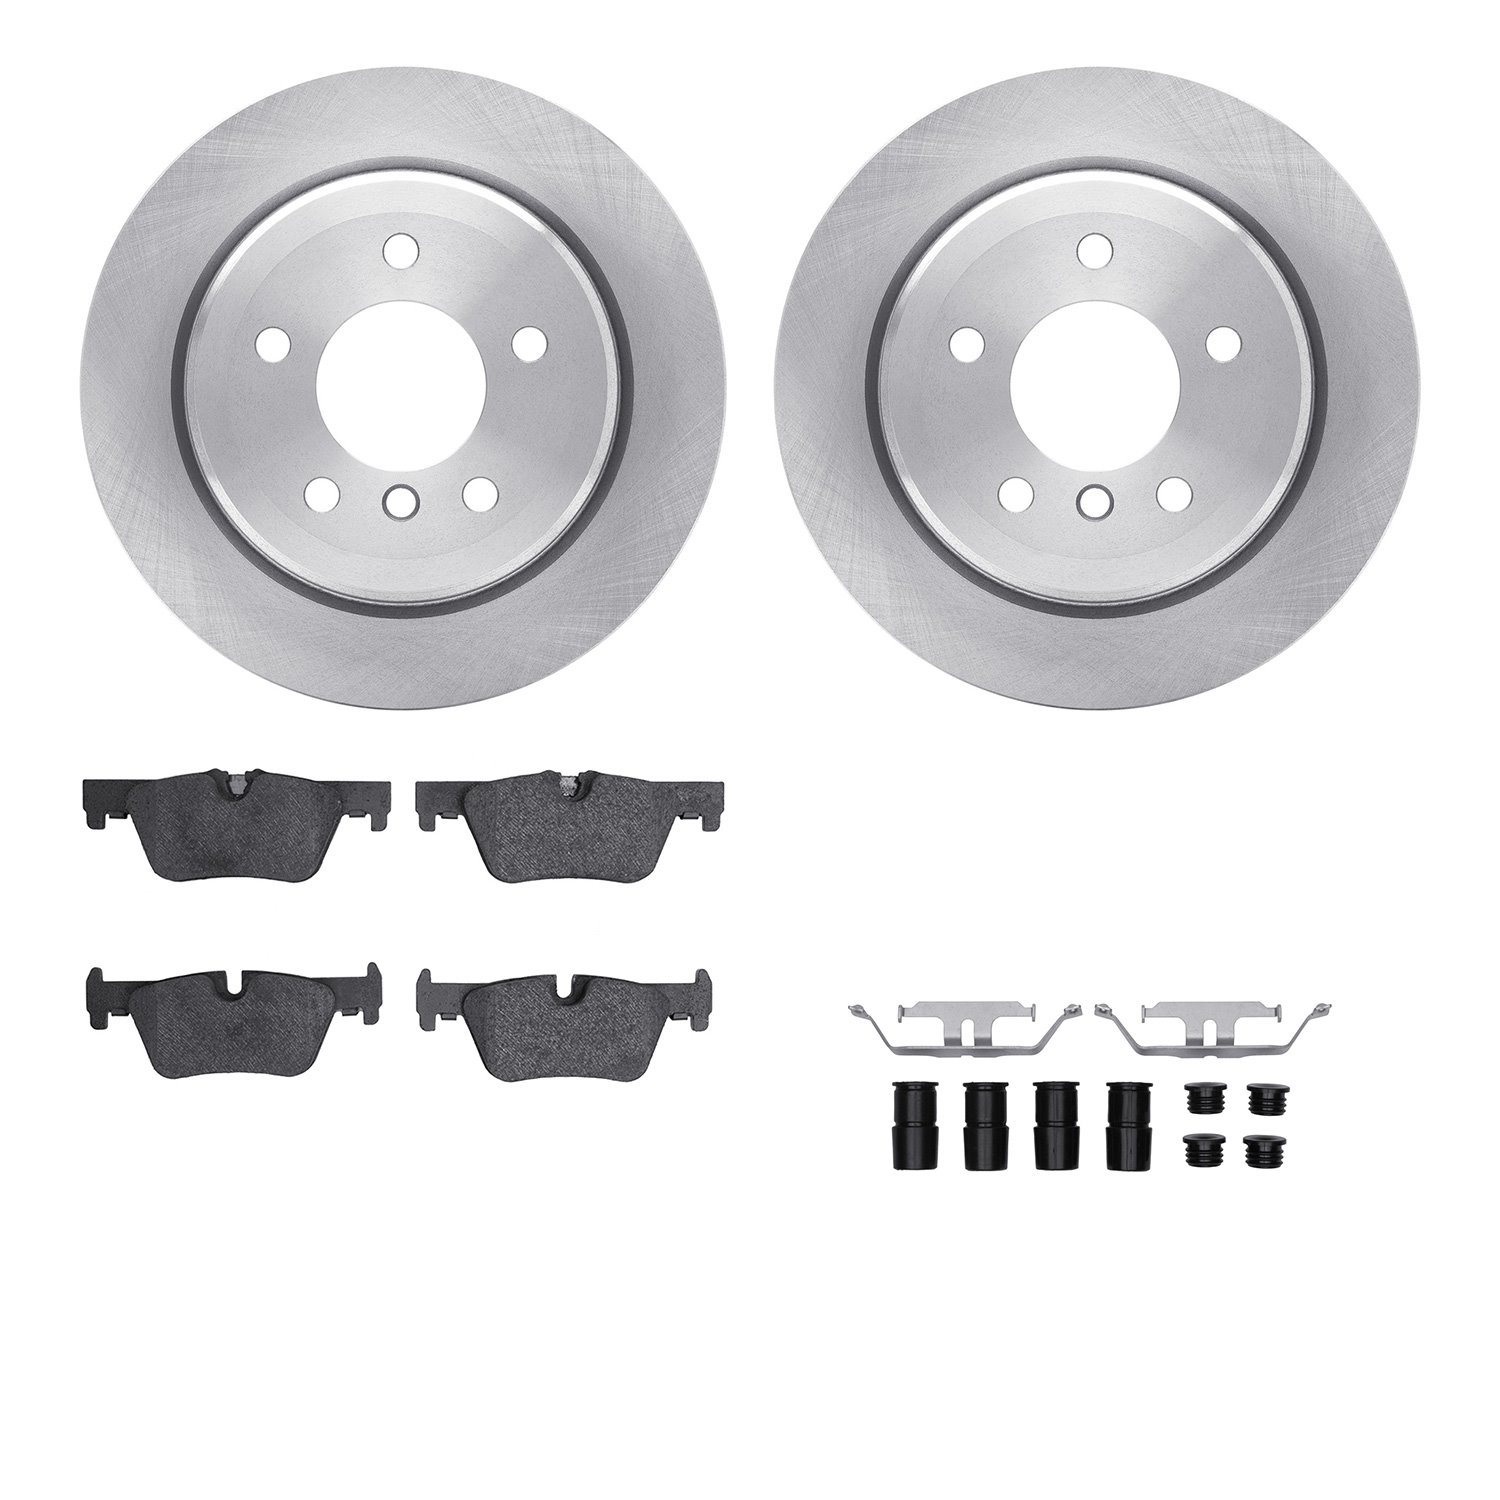 6612-31289 Brake Rotors w/5000 Euro Ceramic Brake Pads Kit with Hardware, 2013-2013 BMW, Position: Rear